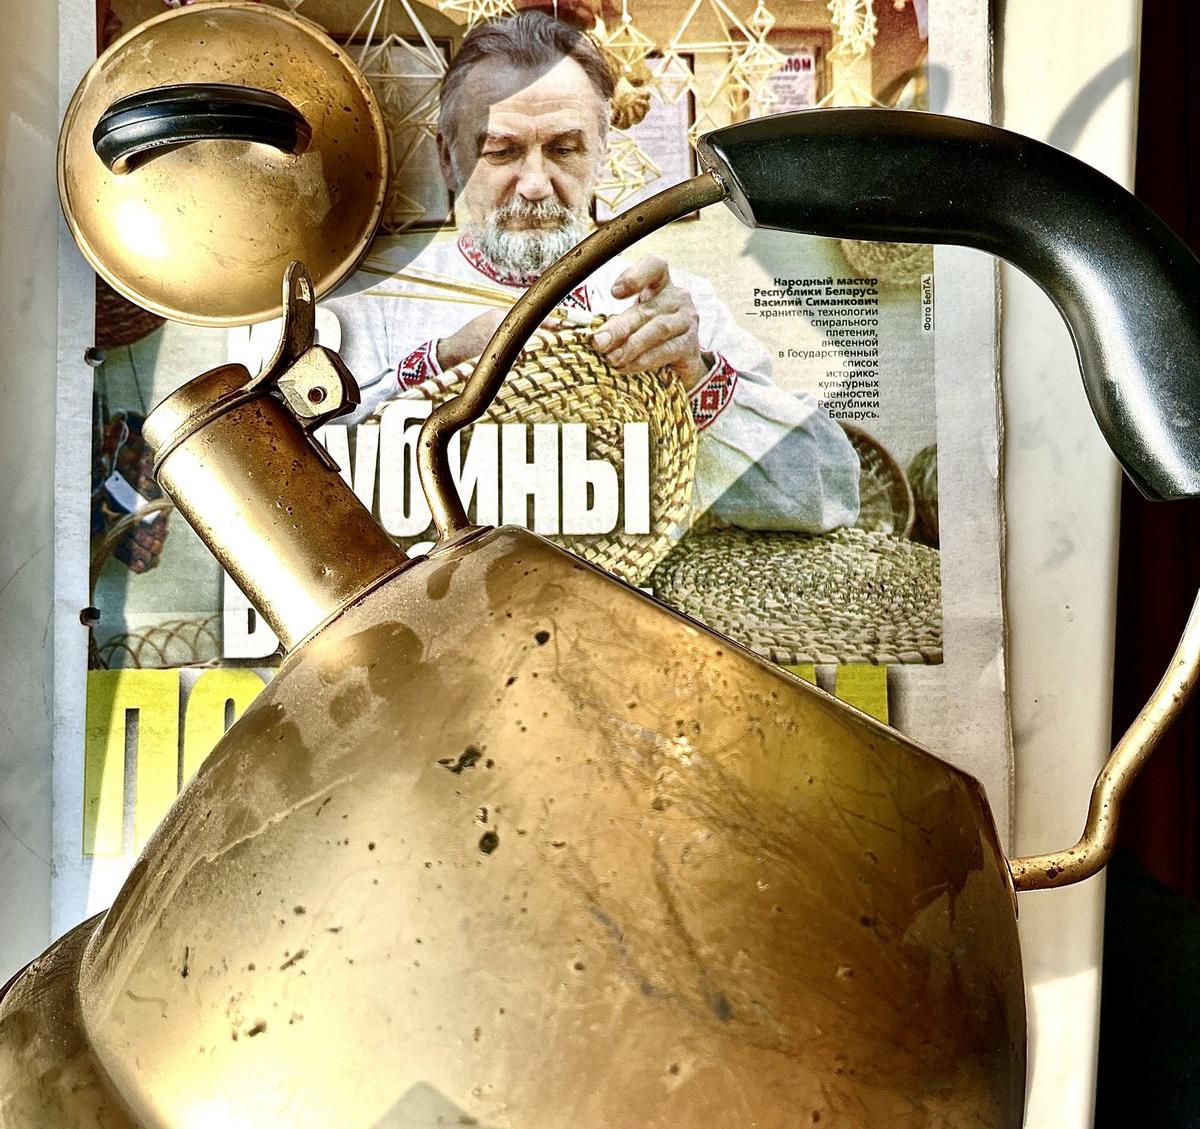 В редакции газеты "Витьбичи" появился необычный медный чайник, который шокировал журналистов